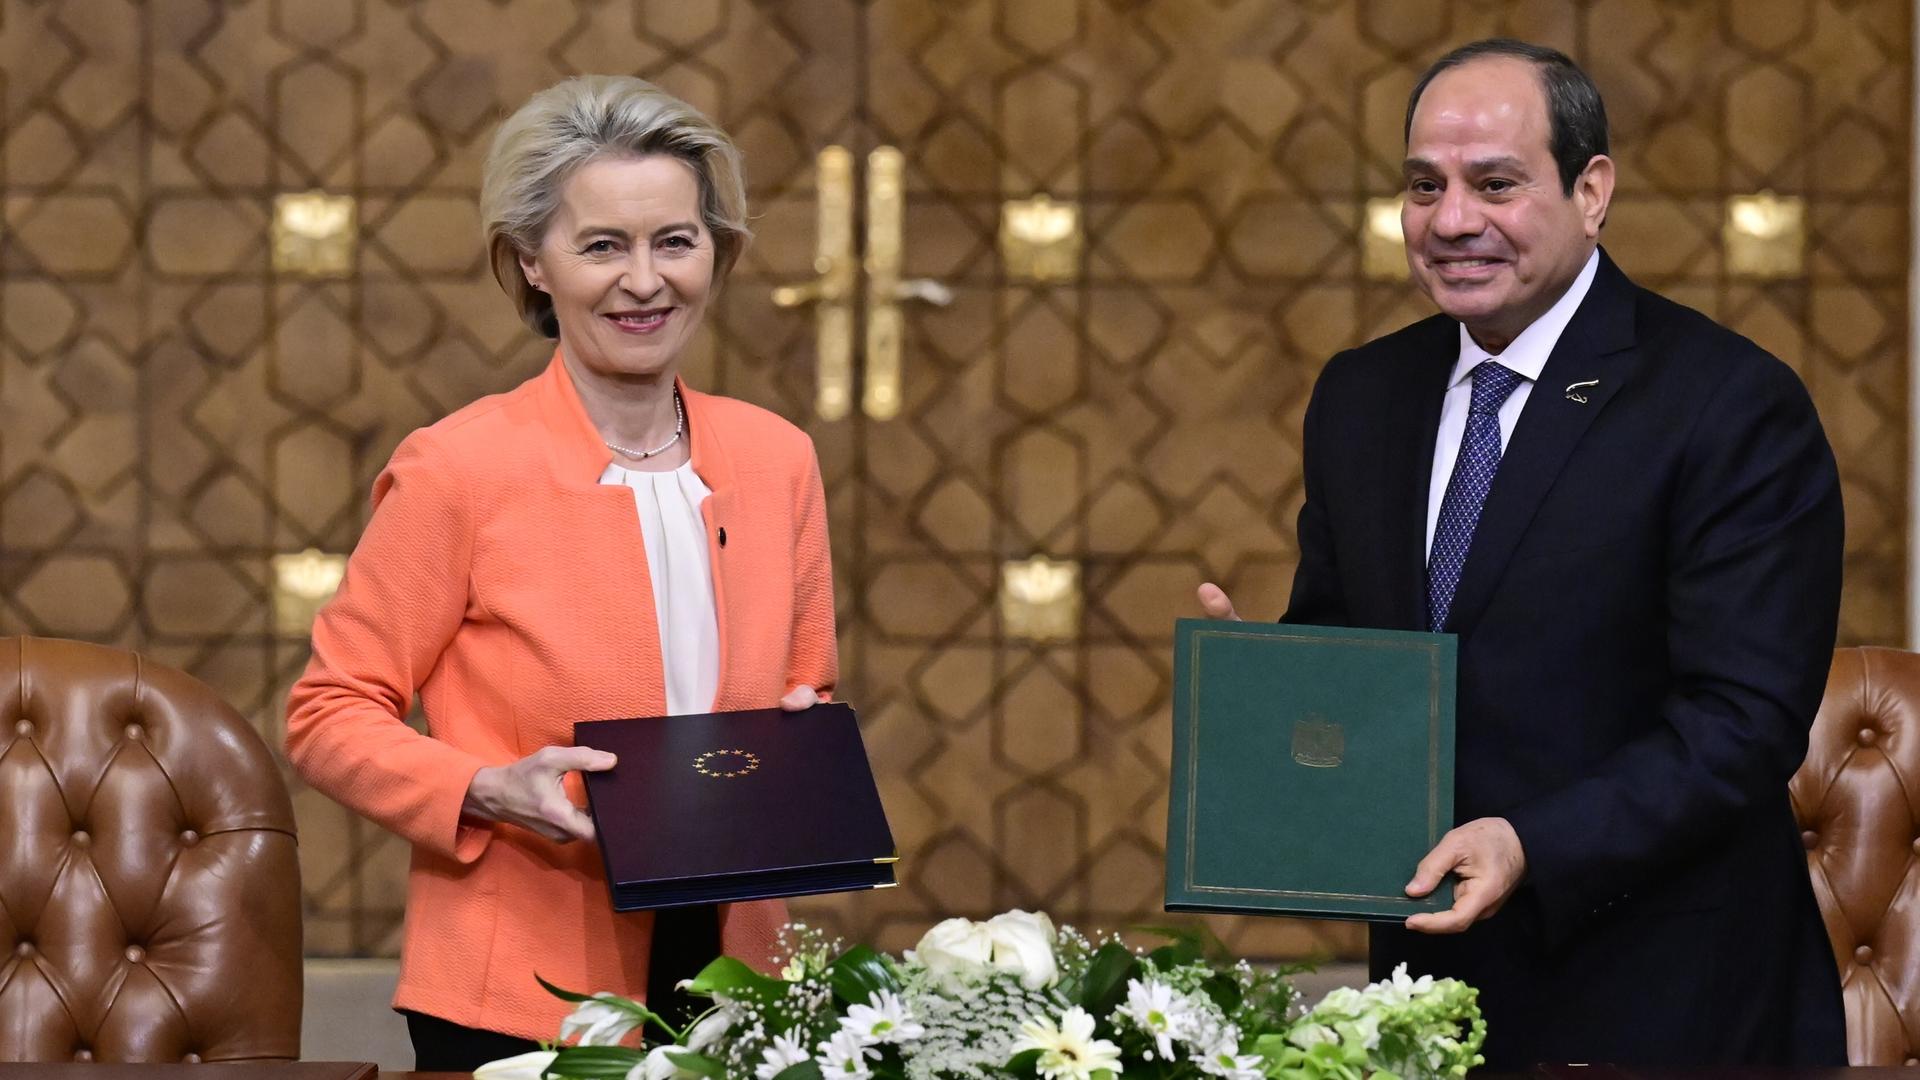 Die Präsidentin der Europäischen Kommission Ursula von der Leyen und der ägyptische Präsident Abdel Fattah al-Sisi bei einem diplomatischen Treffen. Sie halten jeweils eine Mappe in Richtung Kamera. Auf der einen ist das Staatswappen Ägyptens, auf der anderen der Sternenkranz der EU zu sehen.